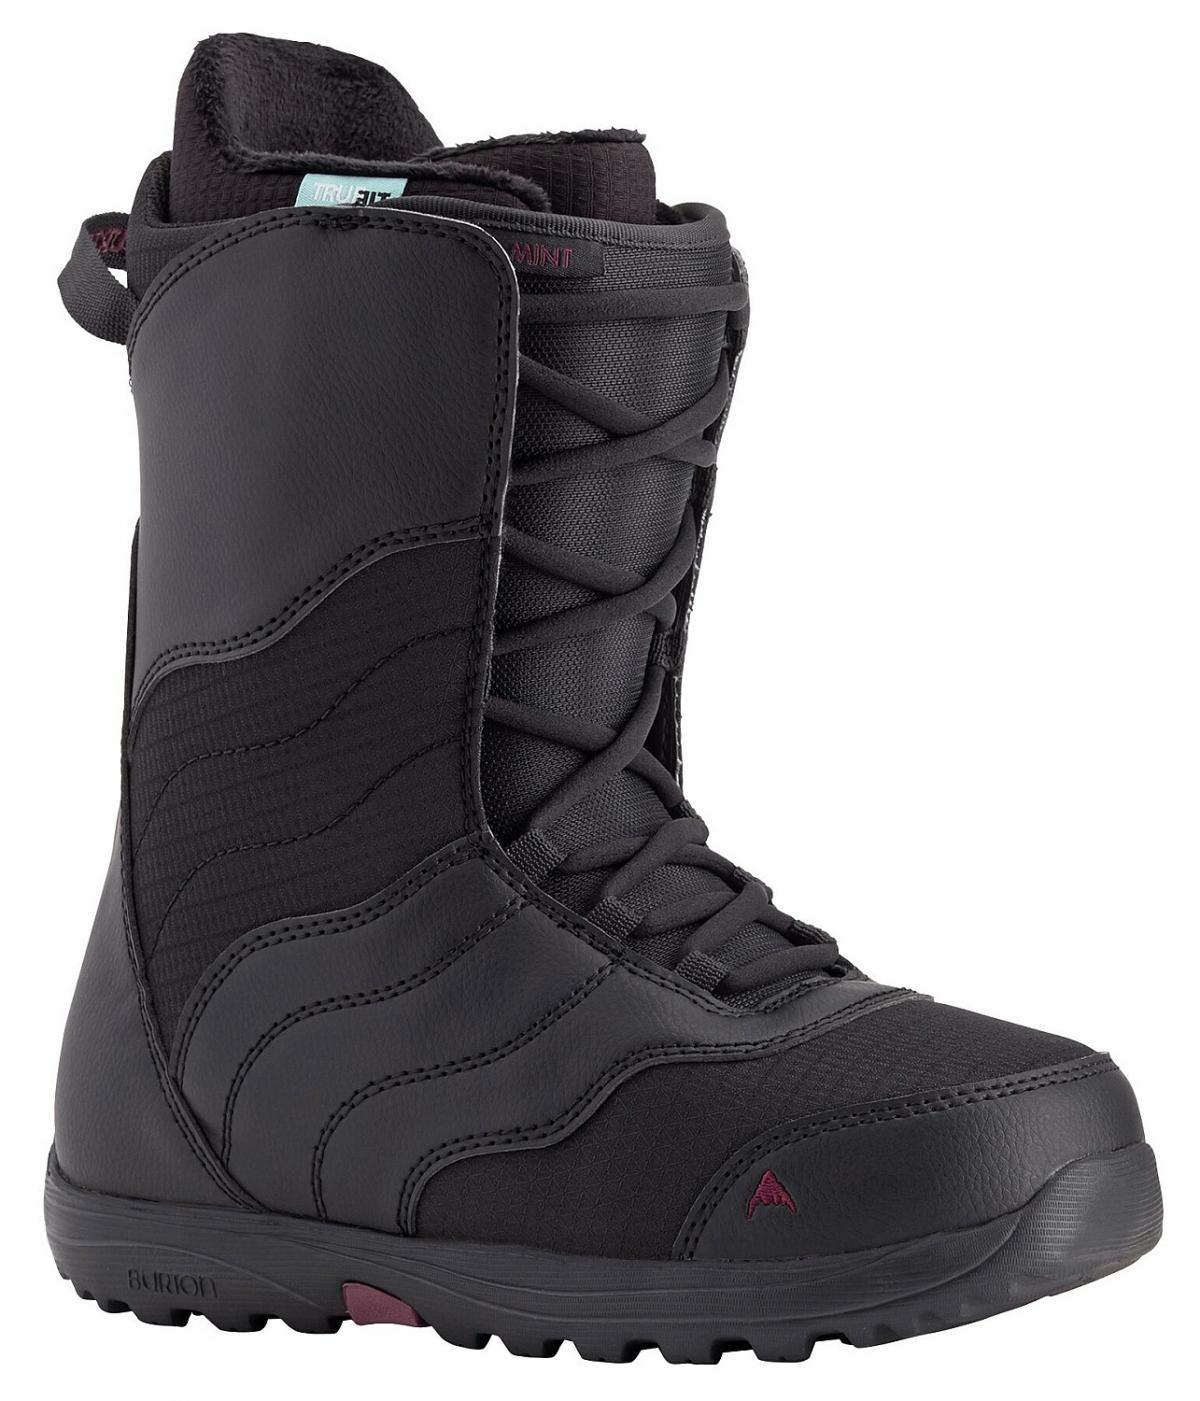 Burton Mint snowboard cipő, black